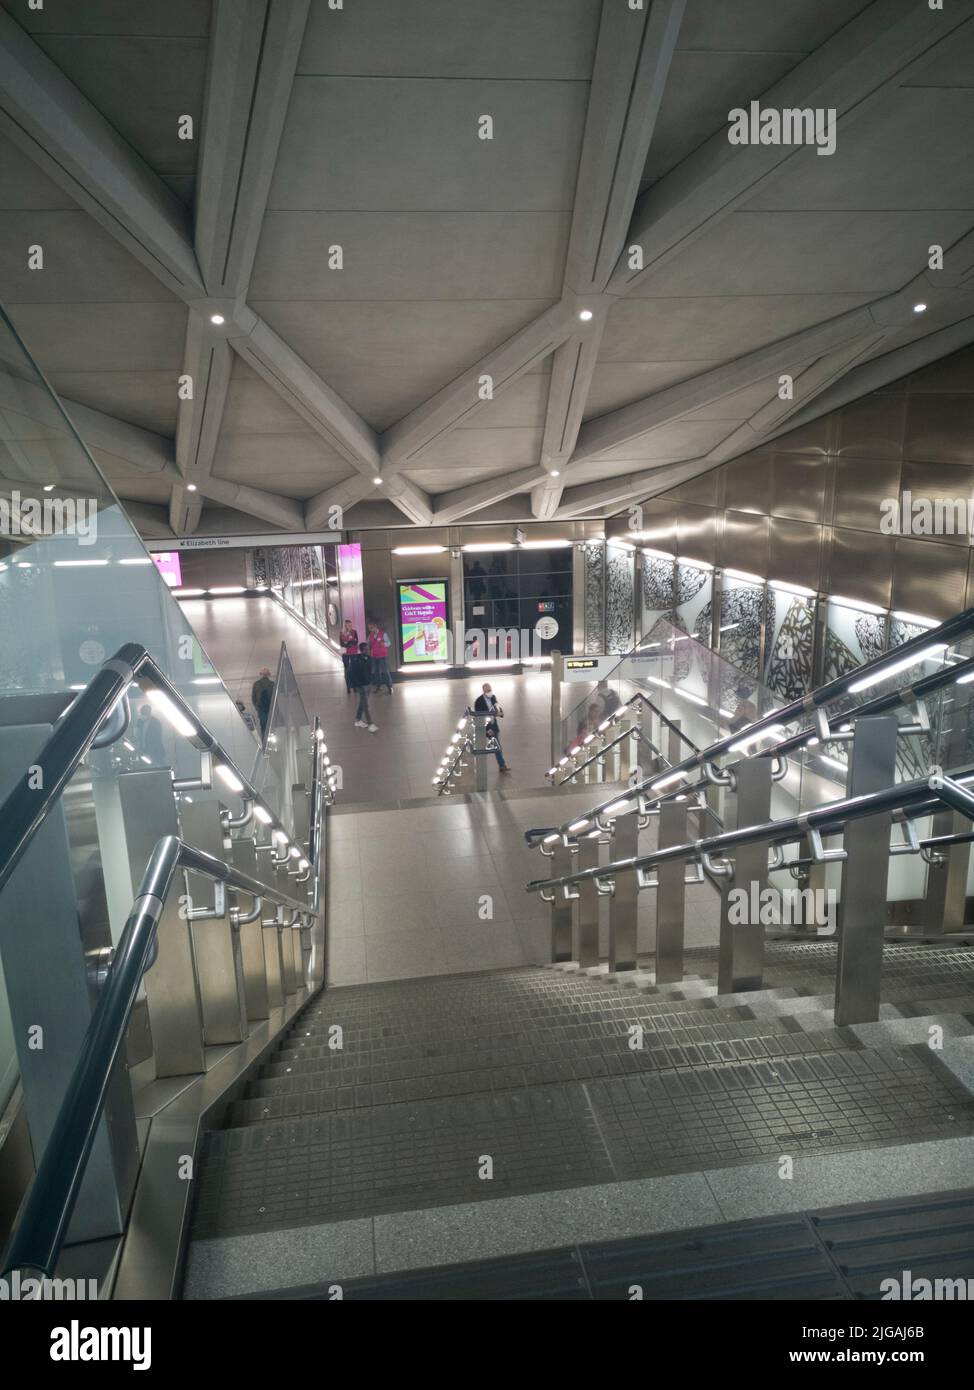 Elizabeth Line, Liverpool St, Londres, Royaume-Uni, mai 2022. Escaliers roulants donnant accès aux nouveaux trains Elizabeth Line, Liverpool Street, métro de Londres, Londres, EC2, Angleterre. Banque D'Images